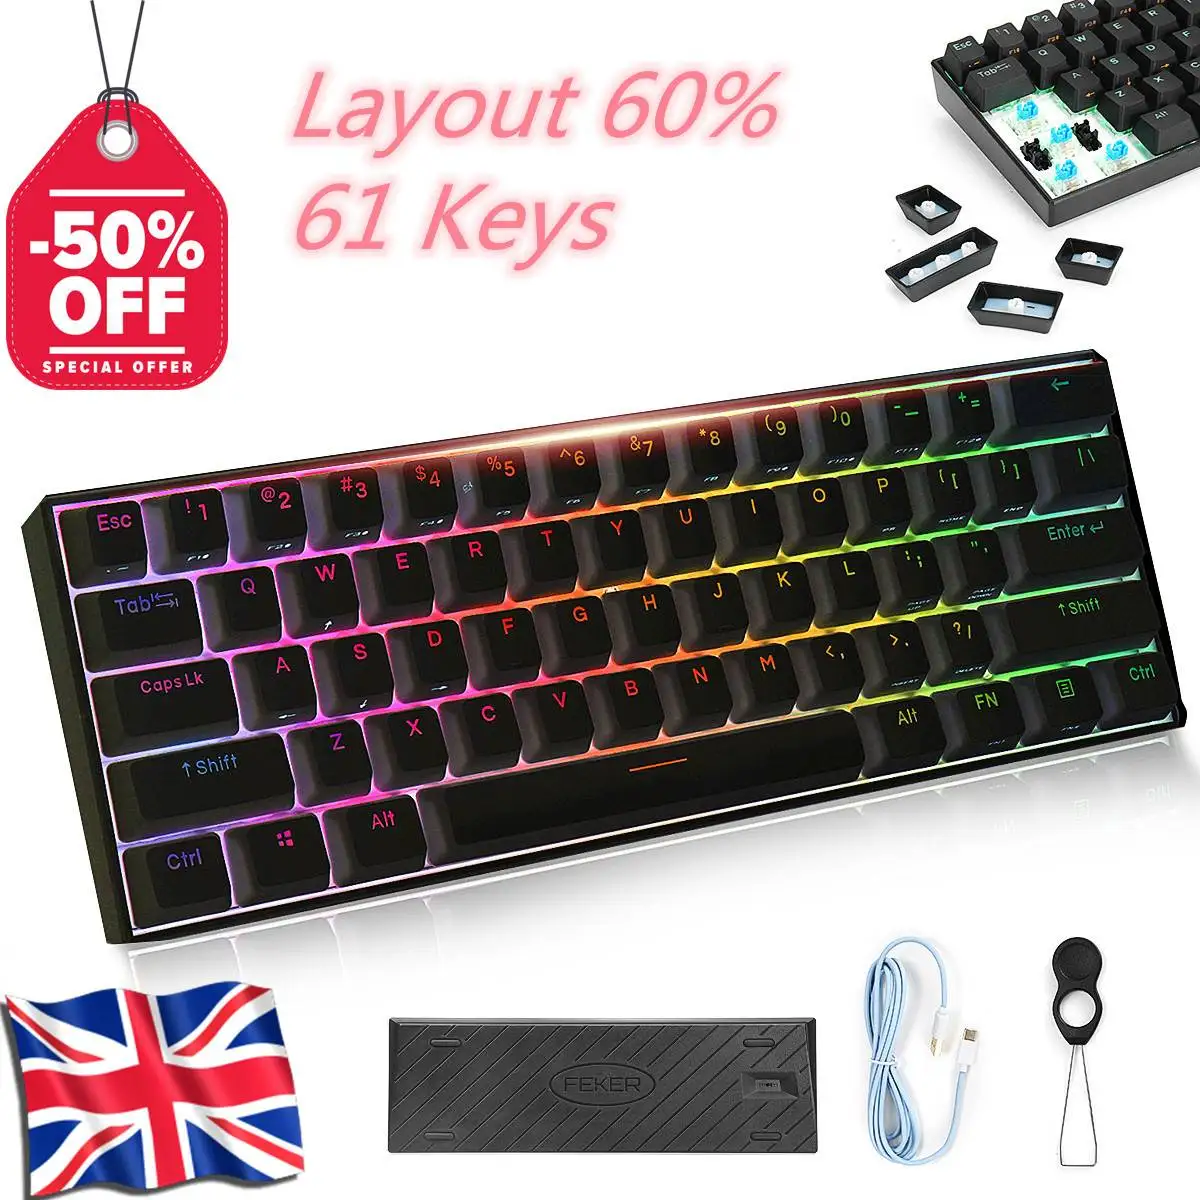 

Механическая игровая клавиатура, 61 клавиша, 60% NKRO bluetooth 5.0 Type-C RGB PBT Keycap Outemu, переключатели для механической клавиатуры